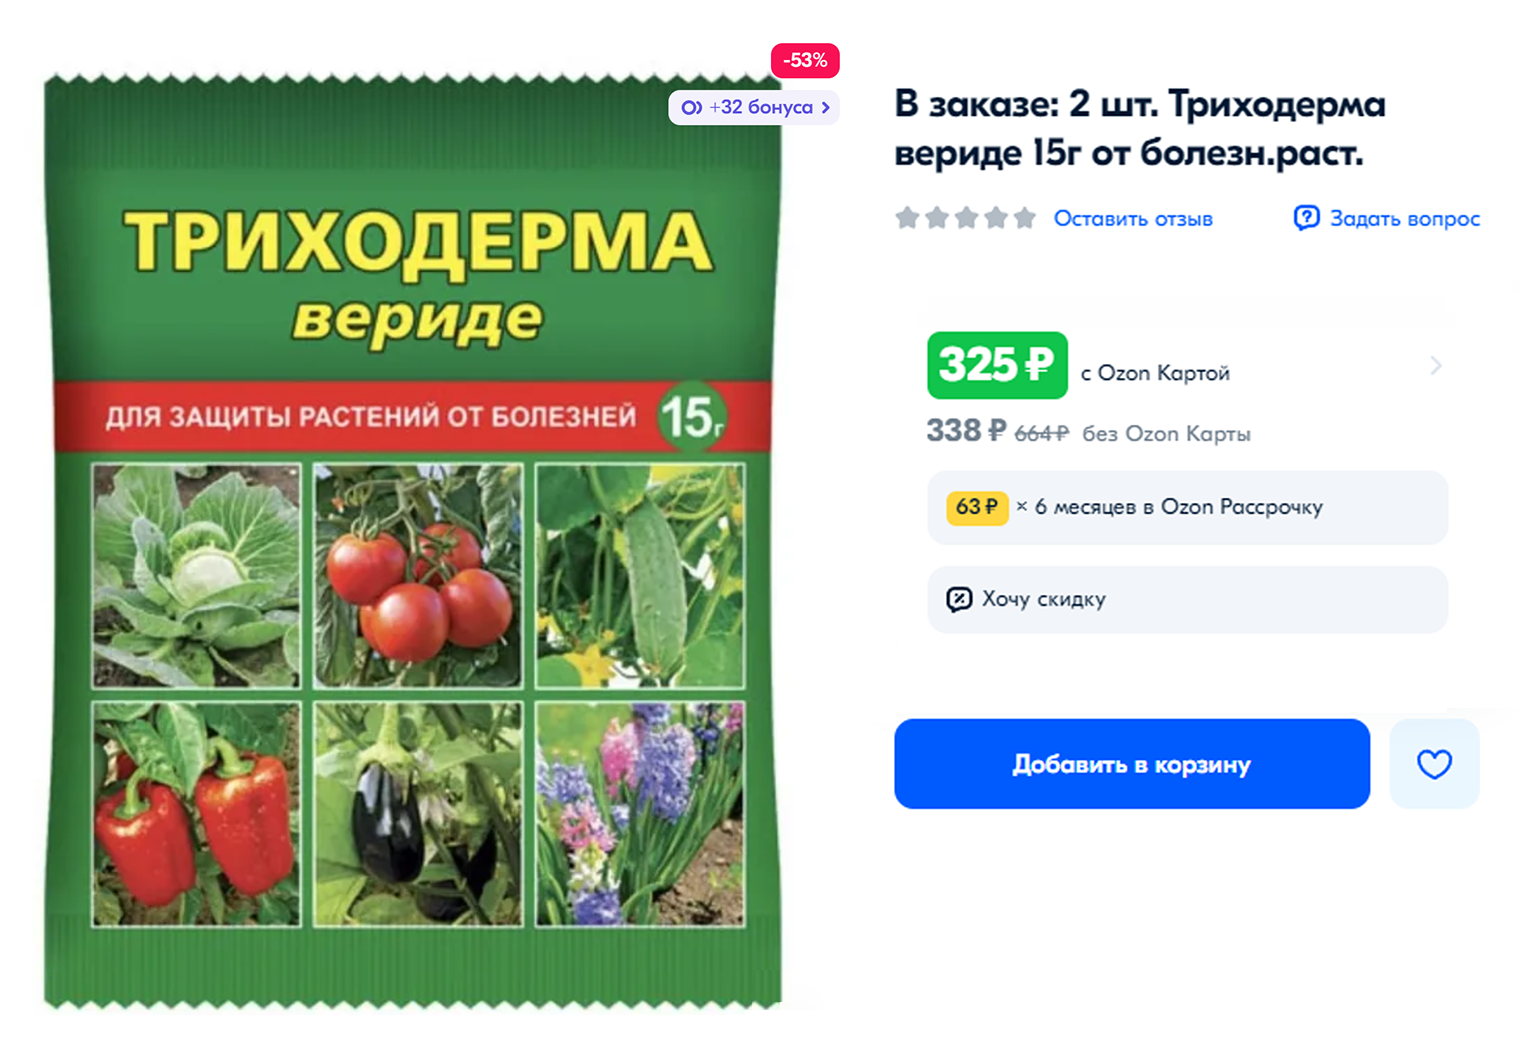 Покупаю триходерму в интернете и развожу по инструкции. Еще ее можно использовать для защиты растений от болезней. Источник: ozon.ru